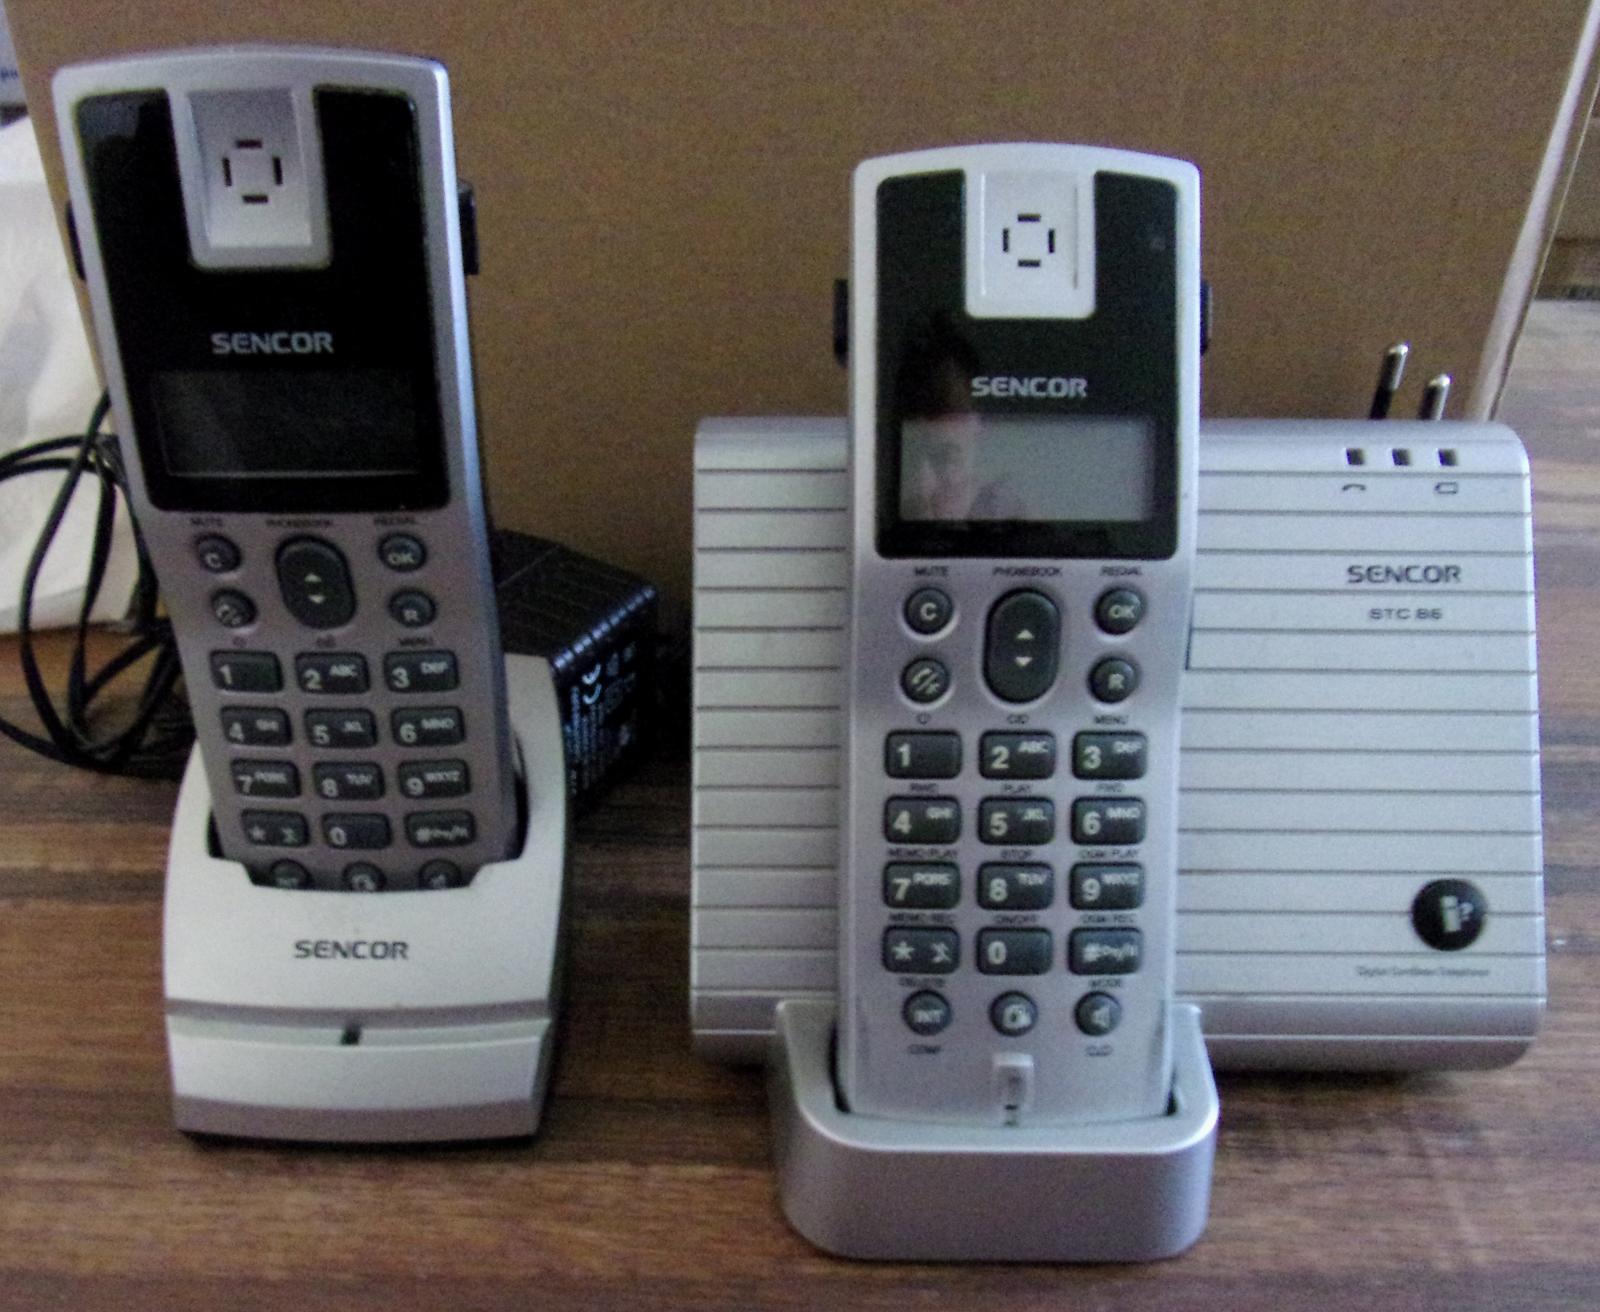 Telefón bezdrôtový SENCOR STC 86 +STC 86 HS - Mobily a smart elektronika